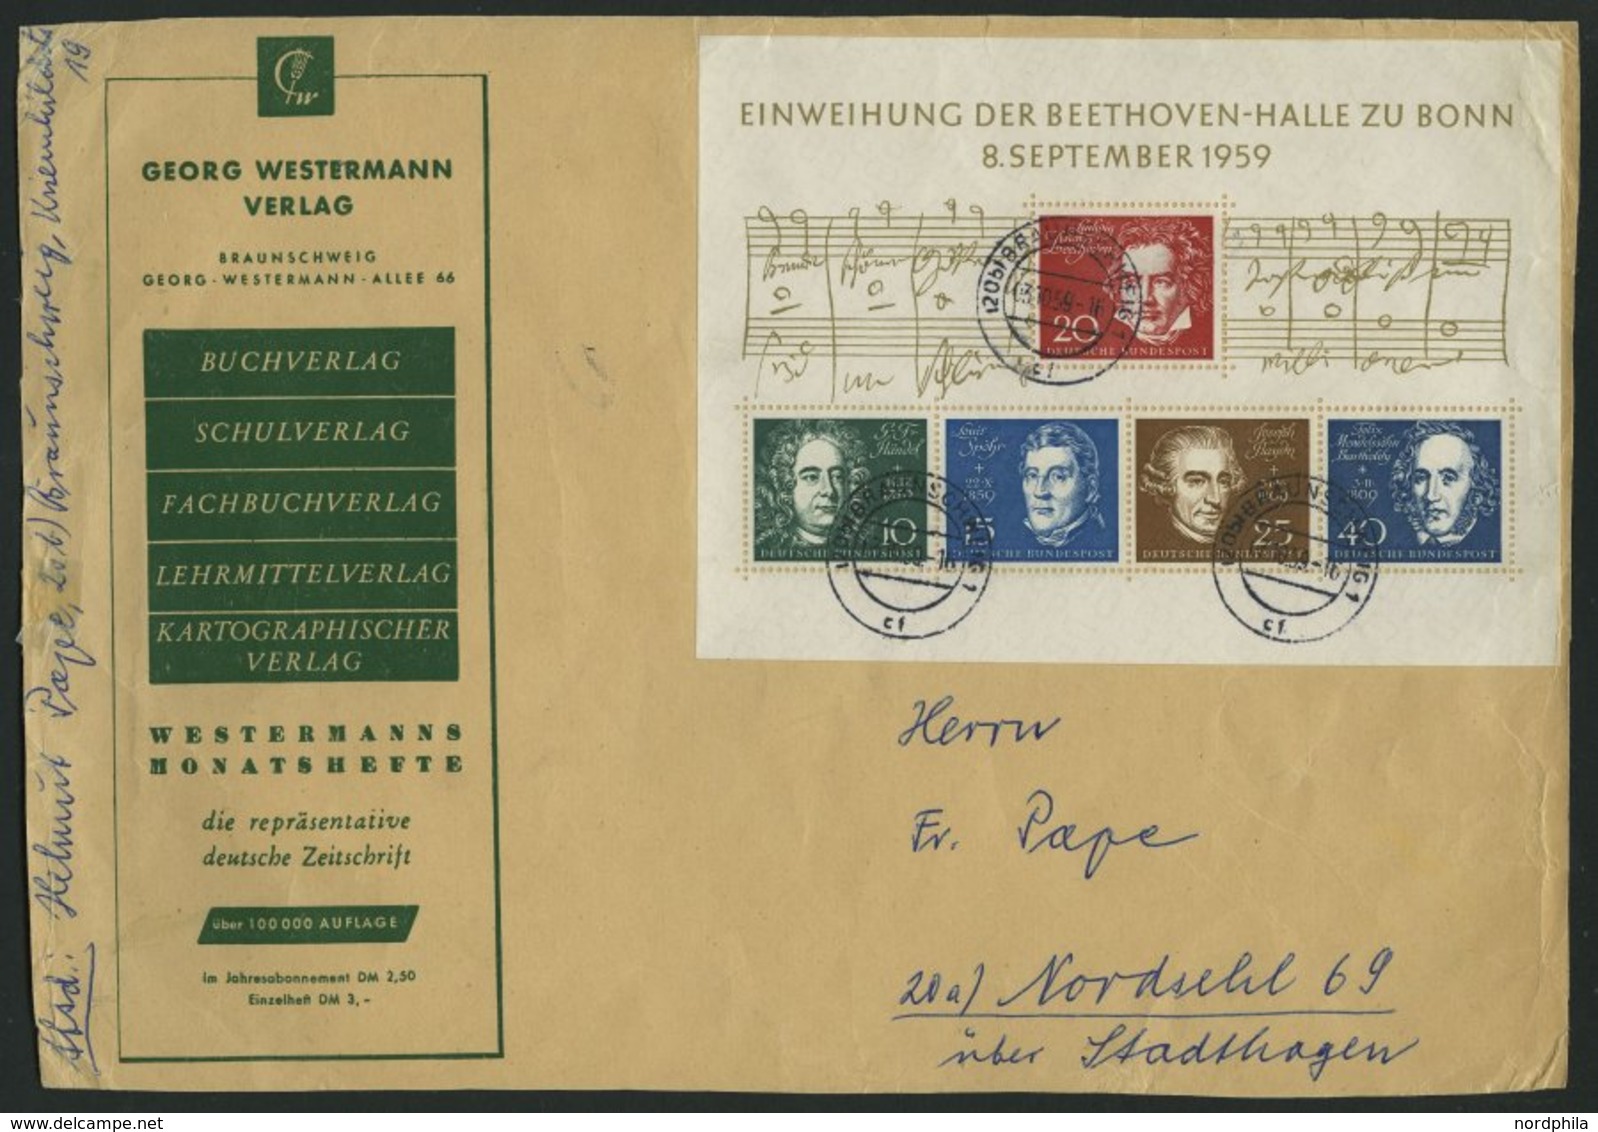 SAMMLUNGEN o, BRIEF, gestempelte Sammlung Bund von 1949-87 im Schaubek-Album, dabei diverse Briefe, anfangs lückenhaft, 